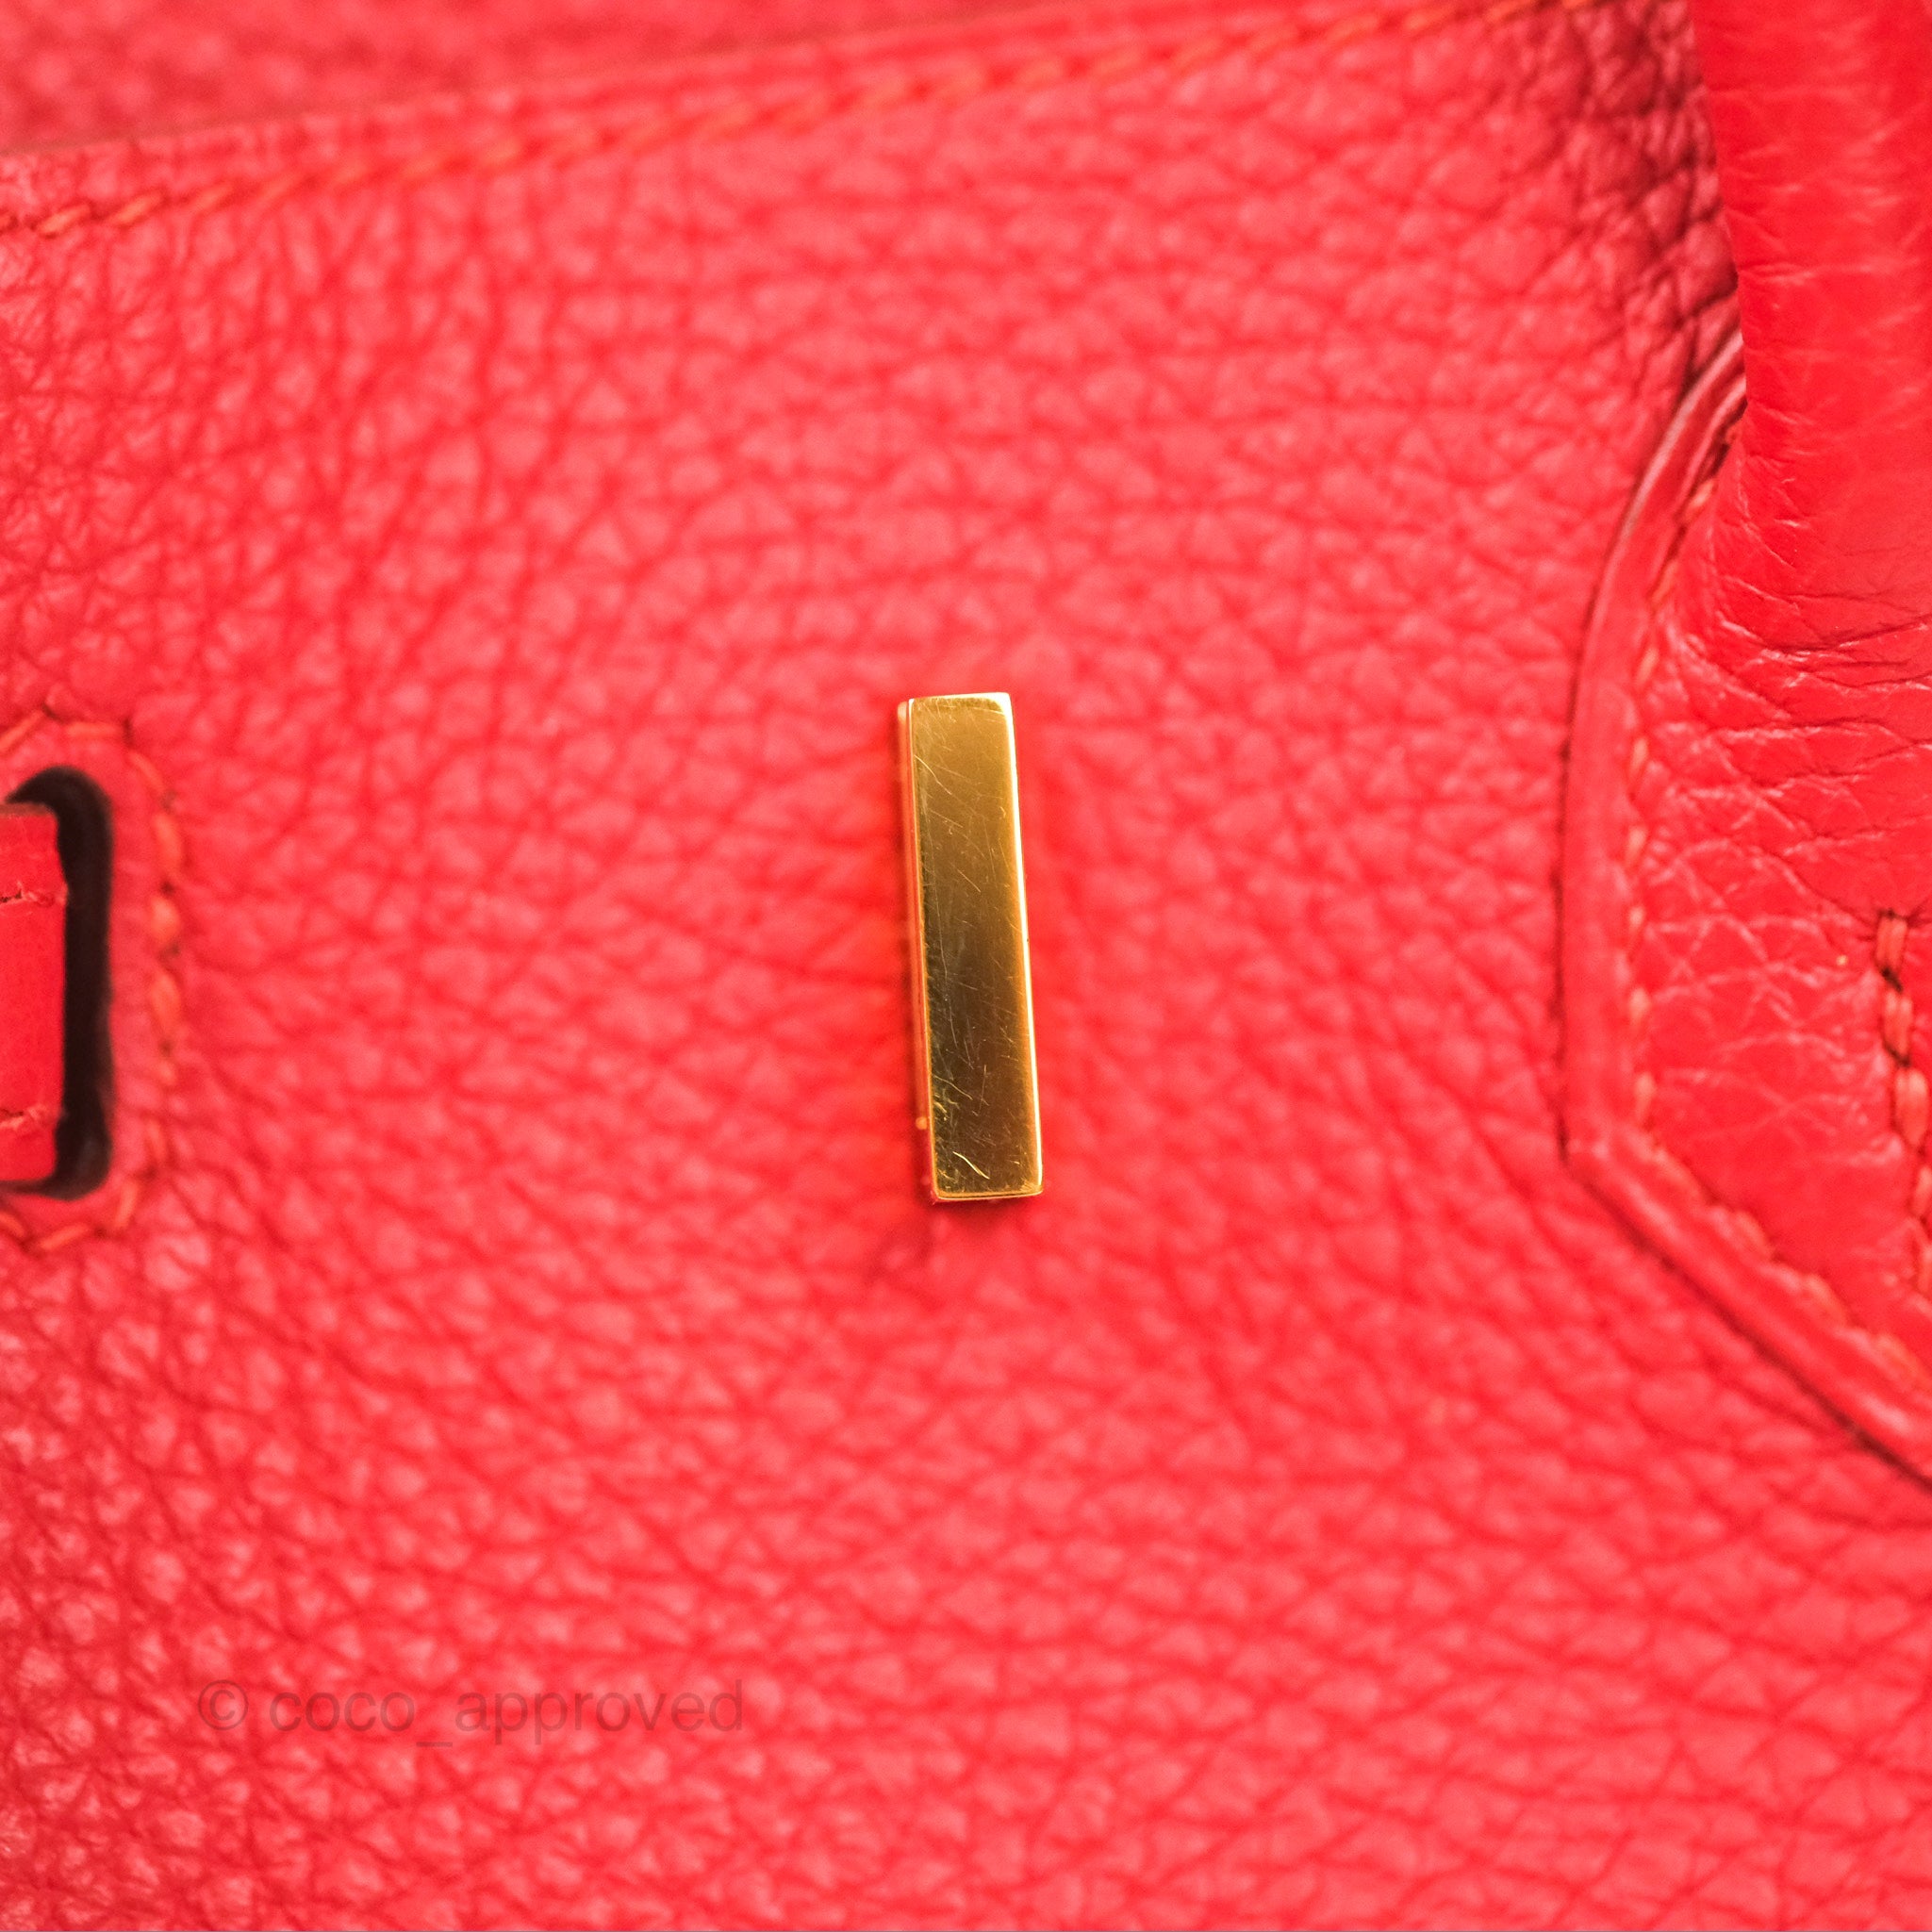 Sold at Auction: Hermes Birkin 30 Bag, Rouge Vif Lipstick Red Togo Leather,  Gold Hardware